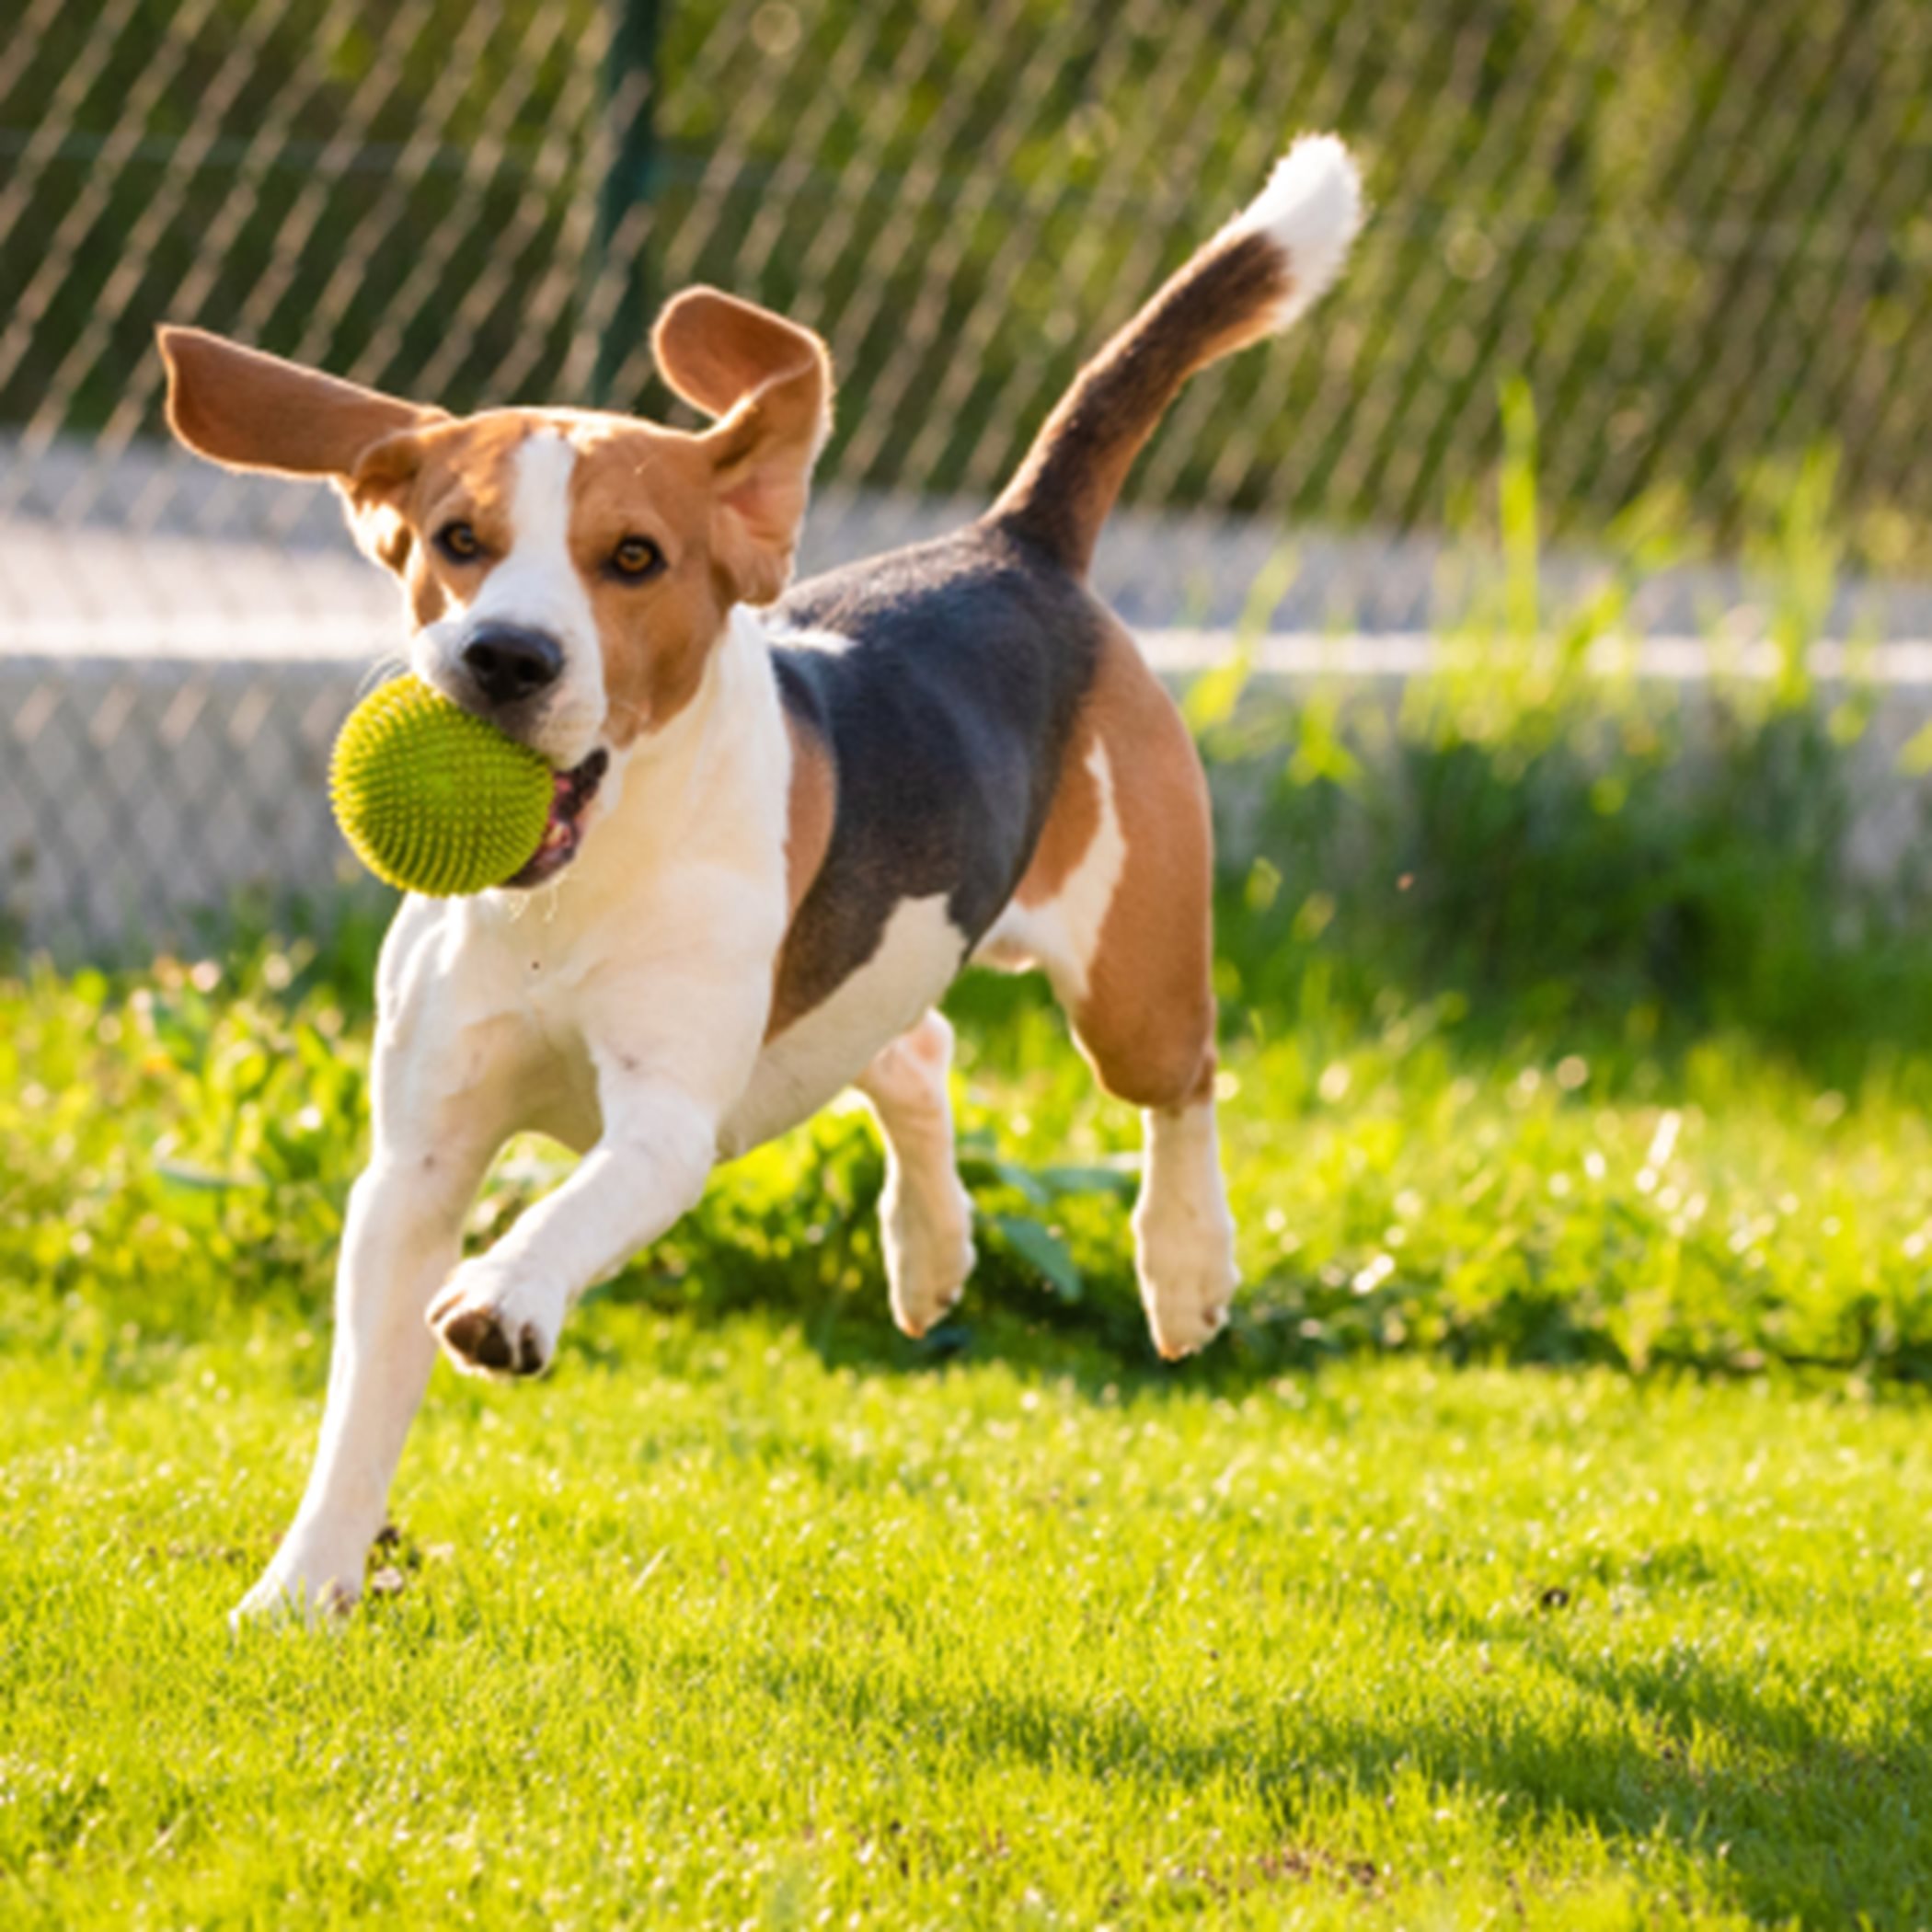 A beagle catching a tennis ball